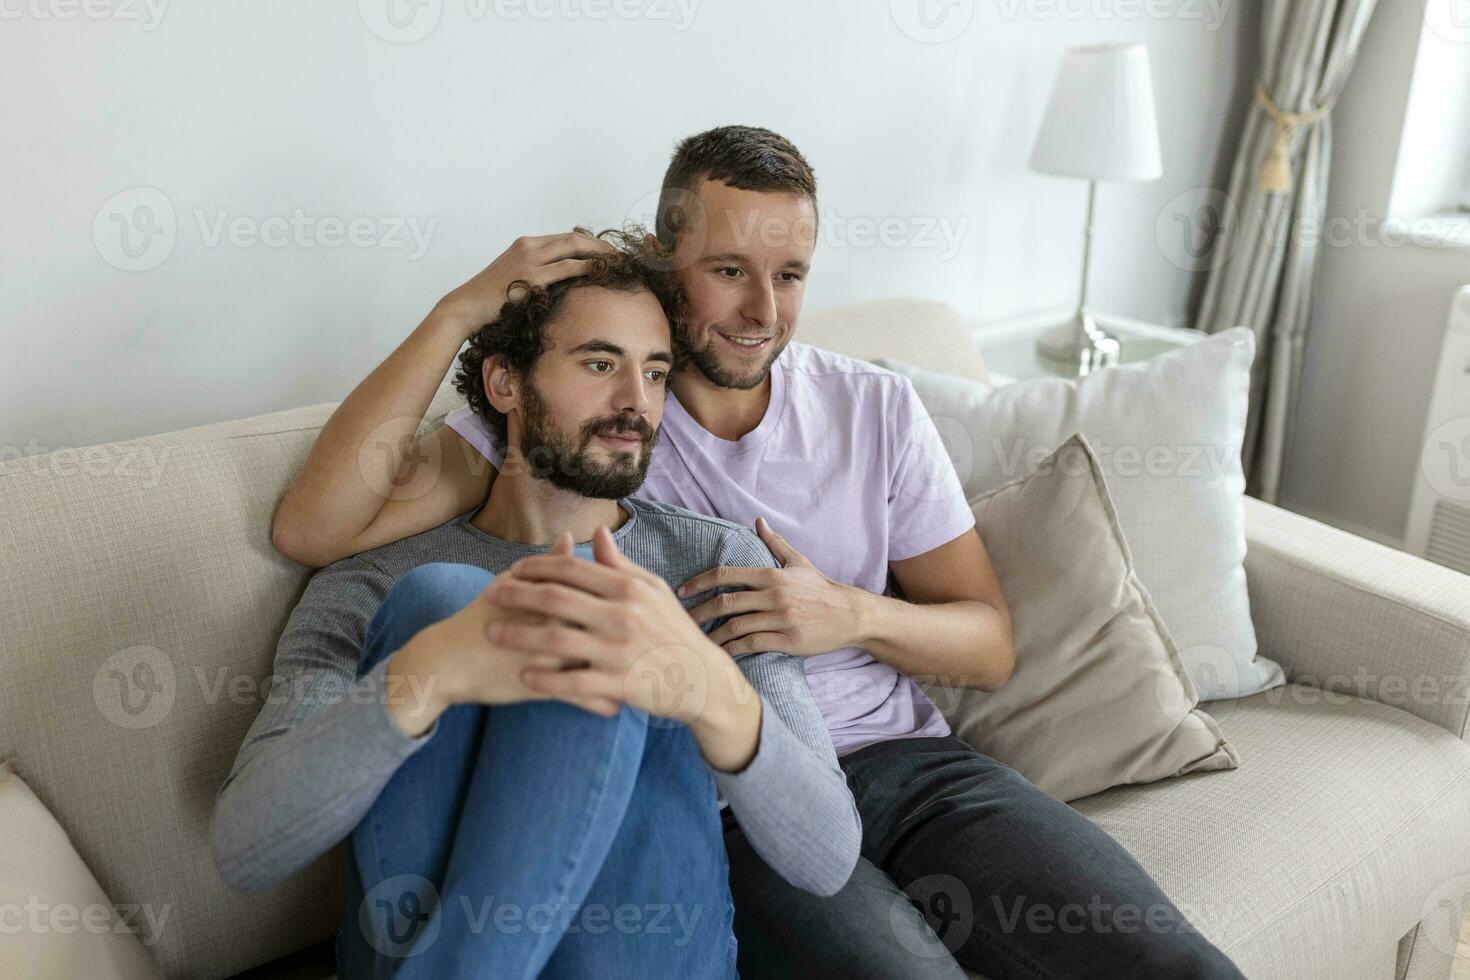 dos joven hombre lgbtq gay Pareja Fechado en amor abrazando disfrutando íntimo oferta sensual momento juntos besos con ojos cerrado foto